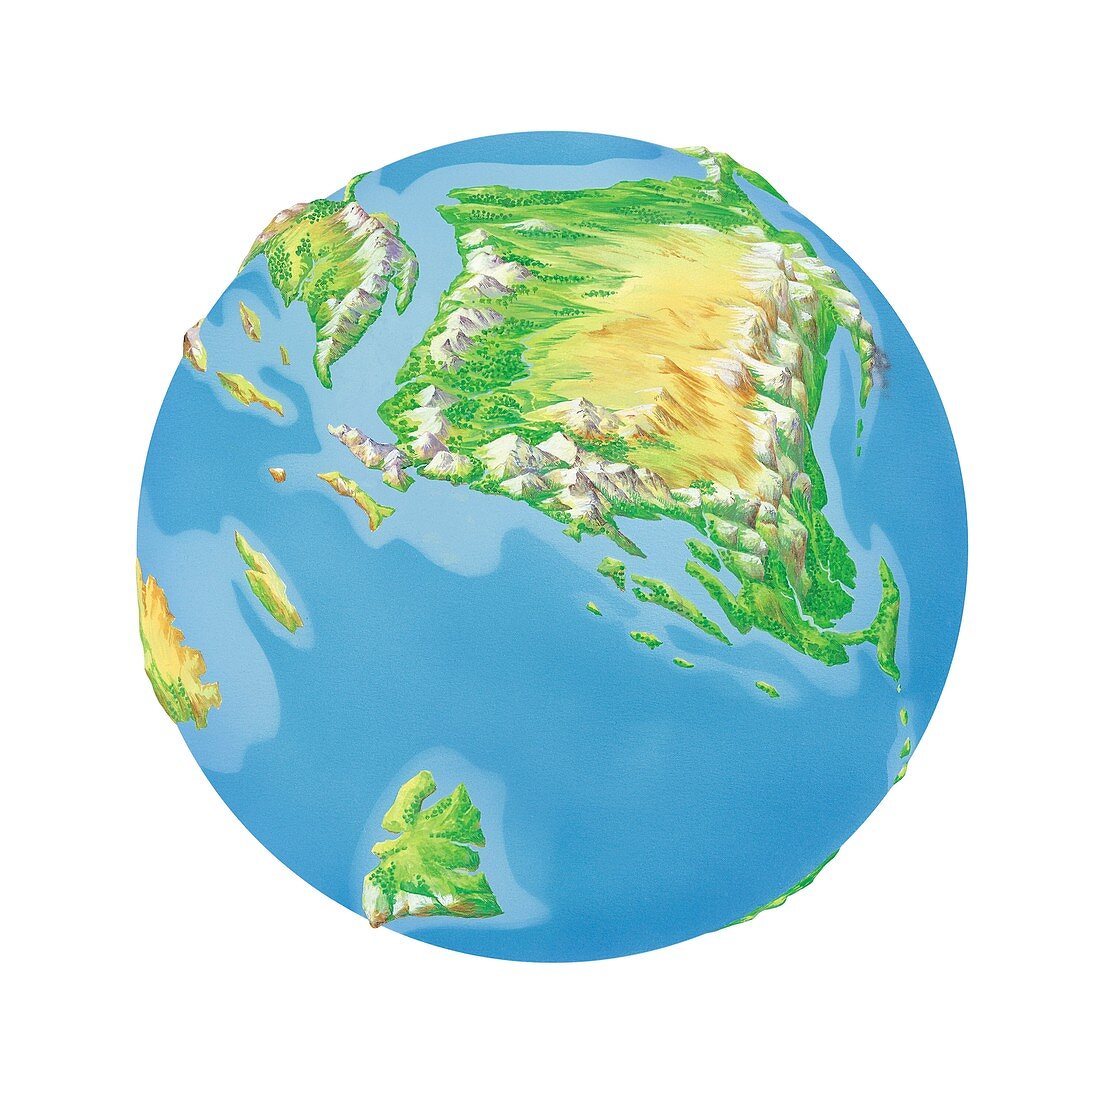 Cretaceous Asia,Earth globe